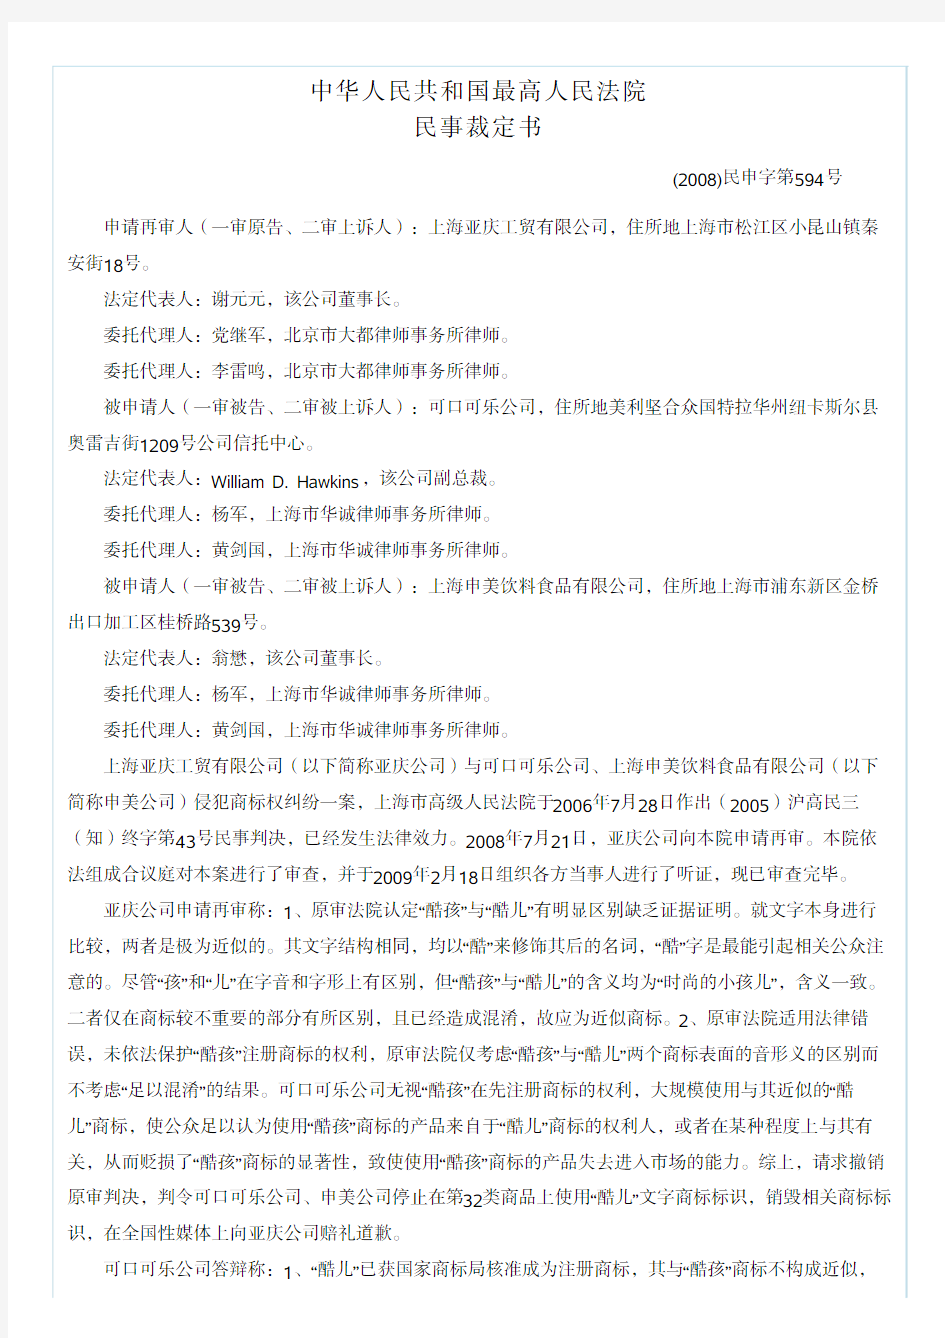 中华人民共和国最高人民法院 - 中国知识产权裁判文书网